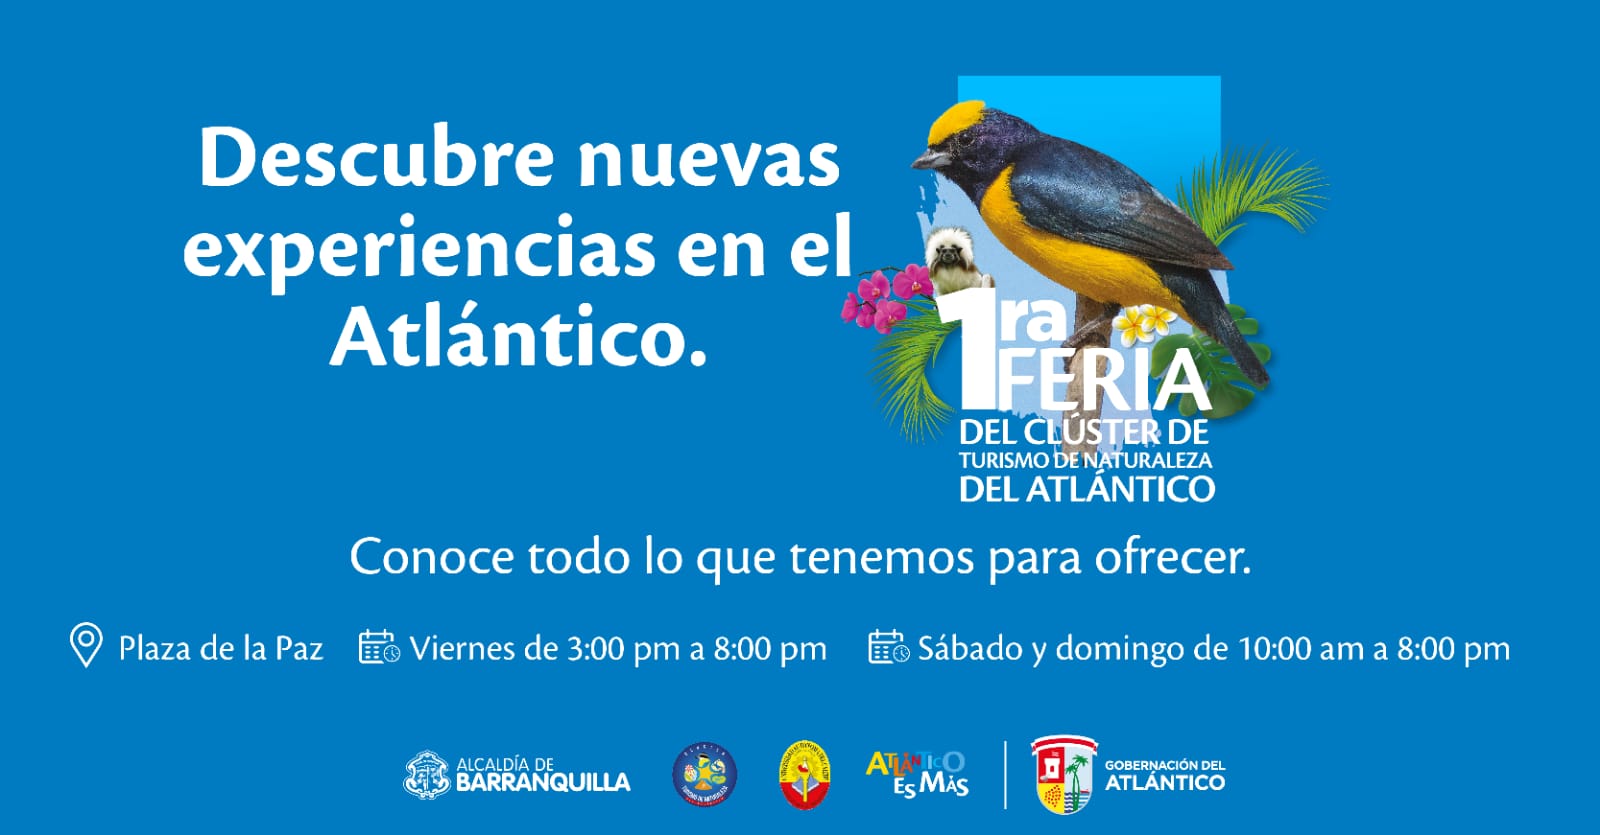 Feria del Clúster de Turismo de Naturaleza del Atlántico se llevará a cabo en la Plaza de la Paz